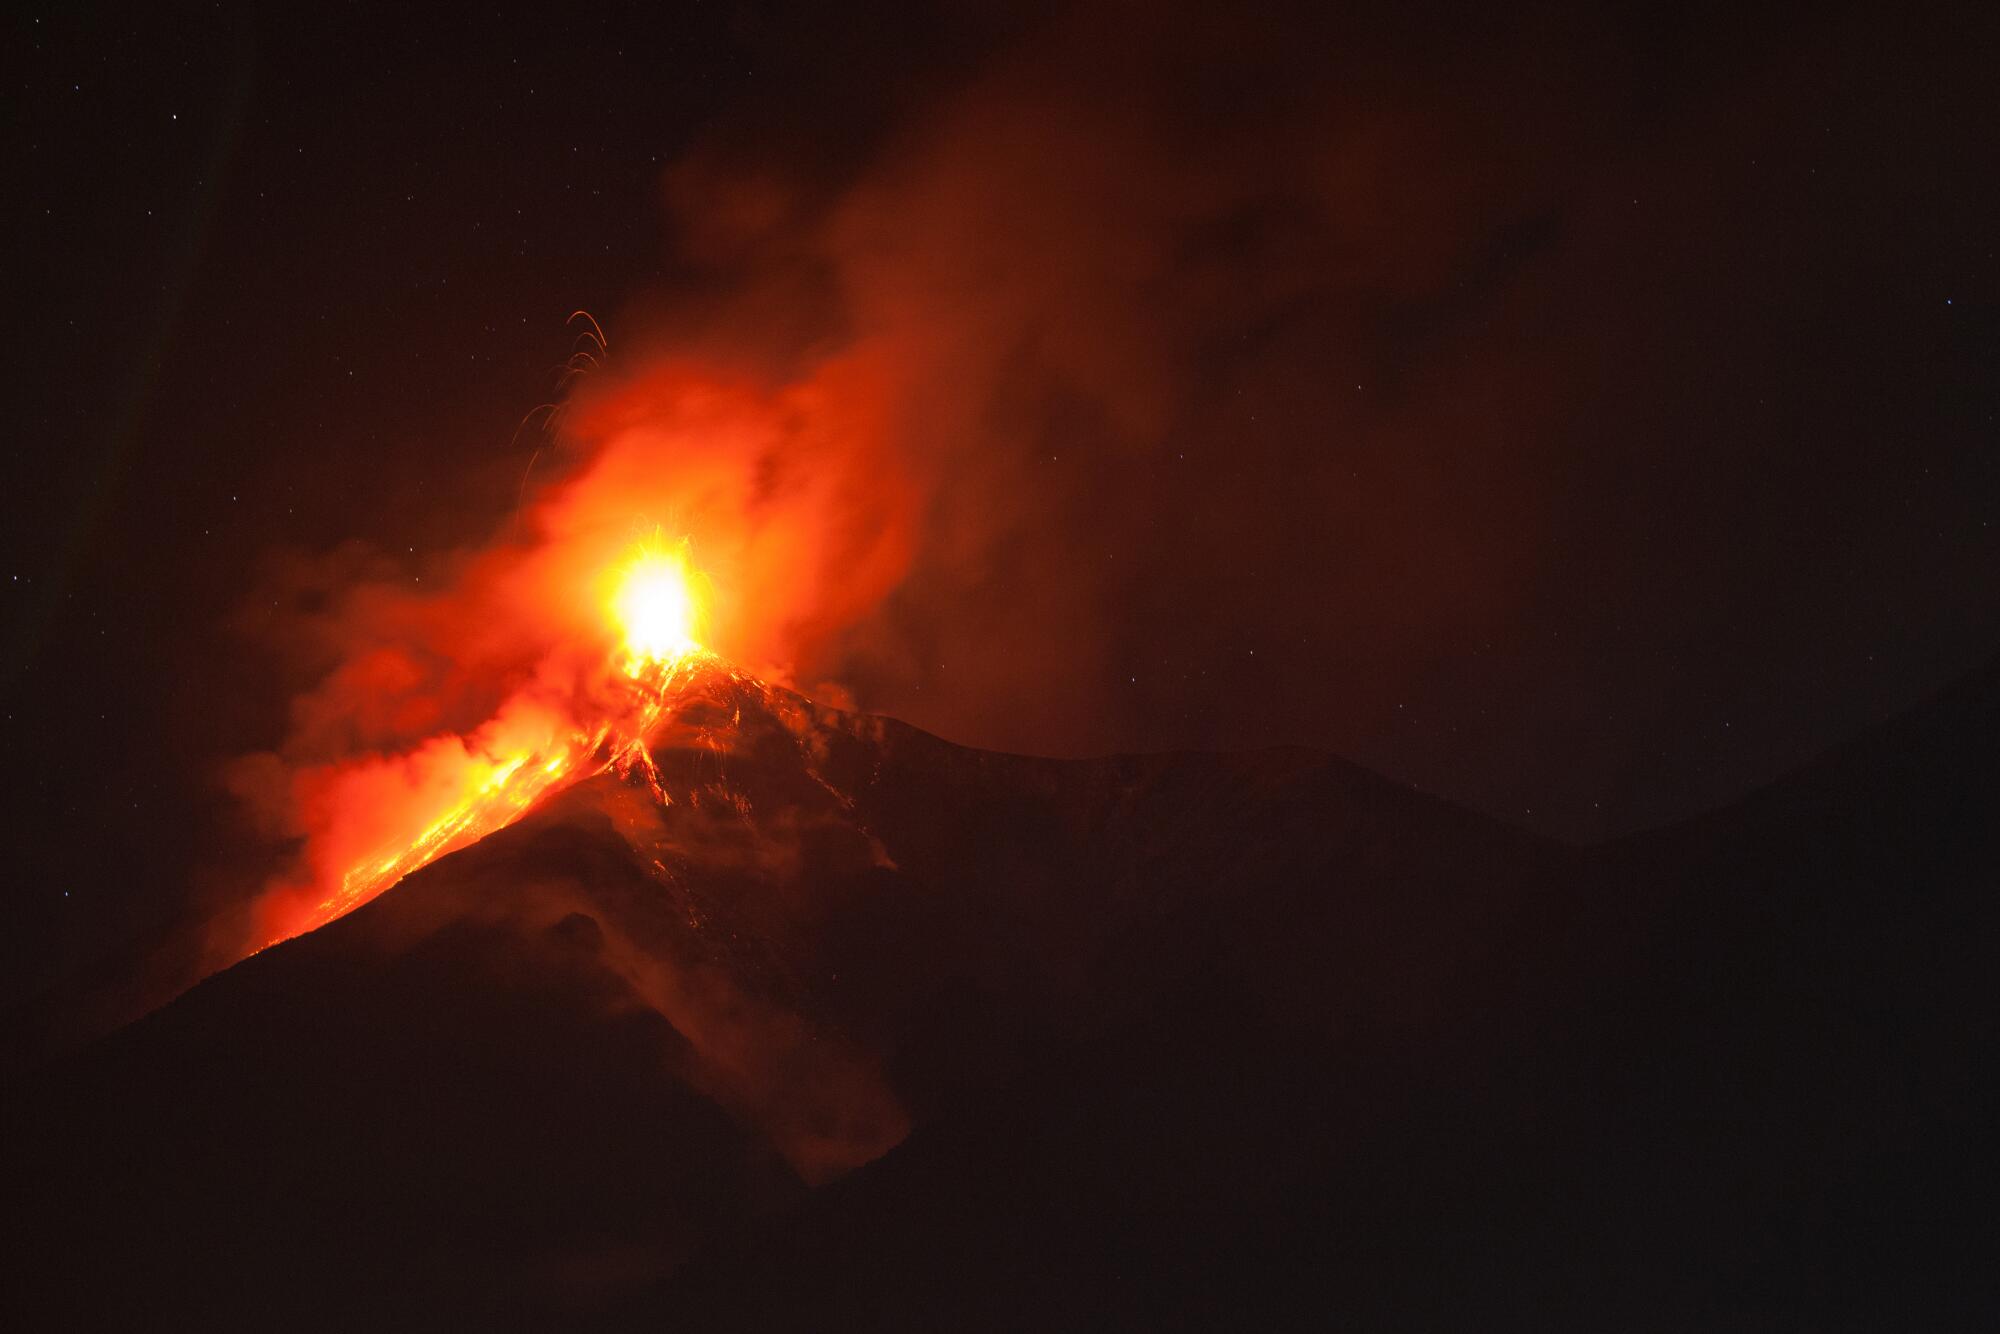 El Volcán de Fuego, uno de los más activos del mundo, ha estado en erupción durante un período de actividad más fuerte de lo habitual. Este es un panorama desde Alotengango, Sacatepequez, Guatemala el 9 de febrero de 2016.